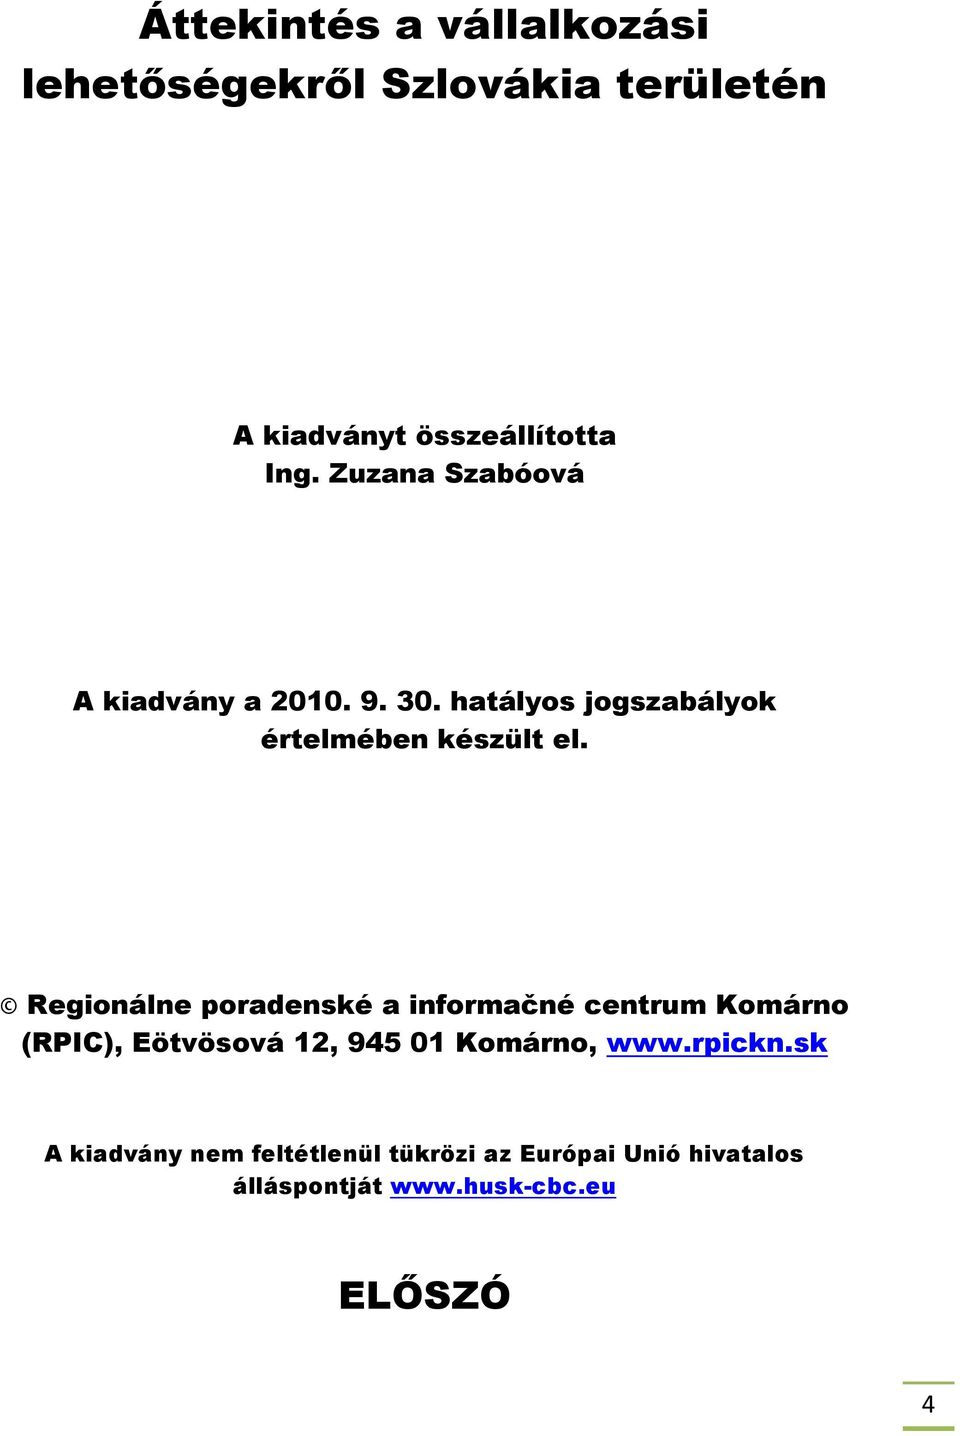 Regionálne poradenské a informačné centrum Komárno (RPIC), Eötvösová 12, 945 01 Komárno, www.